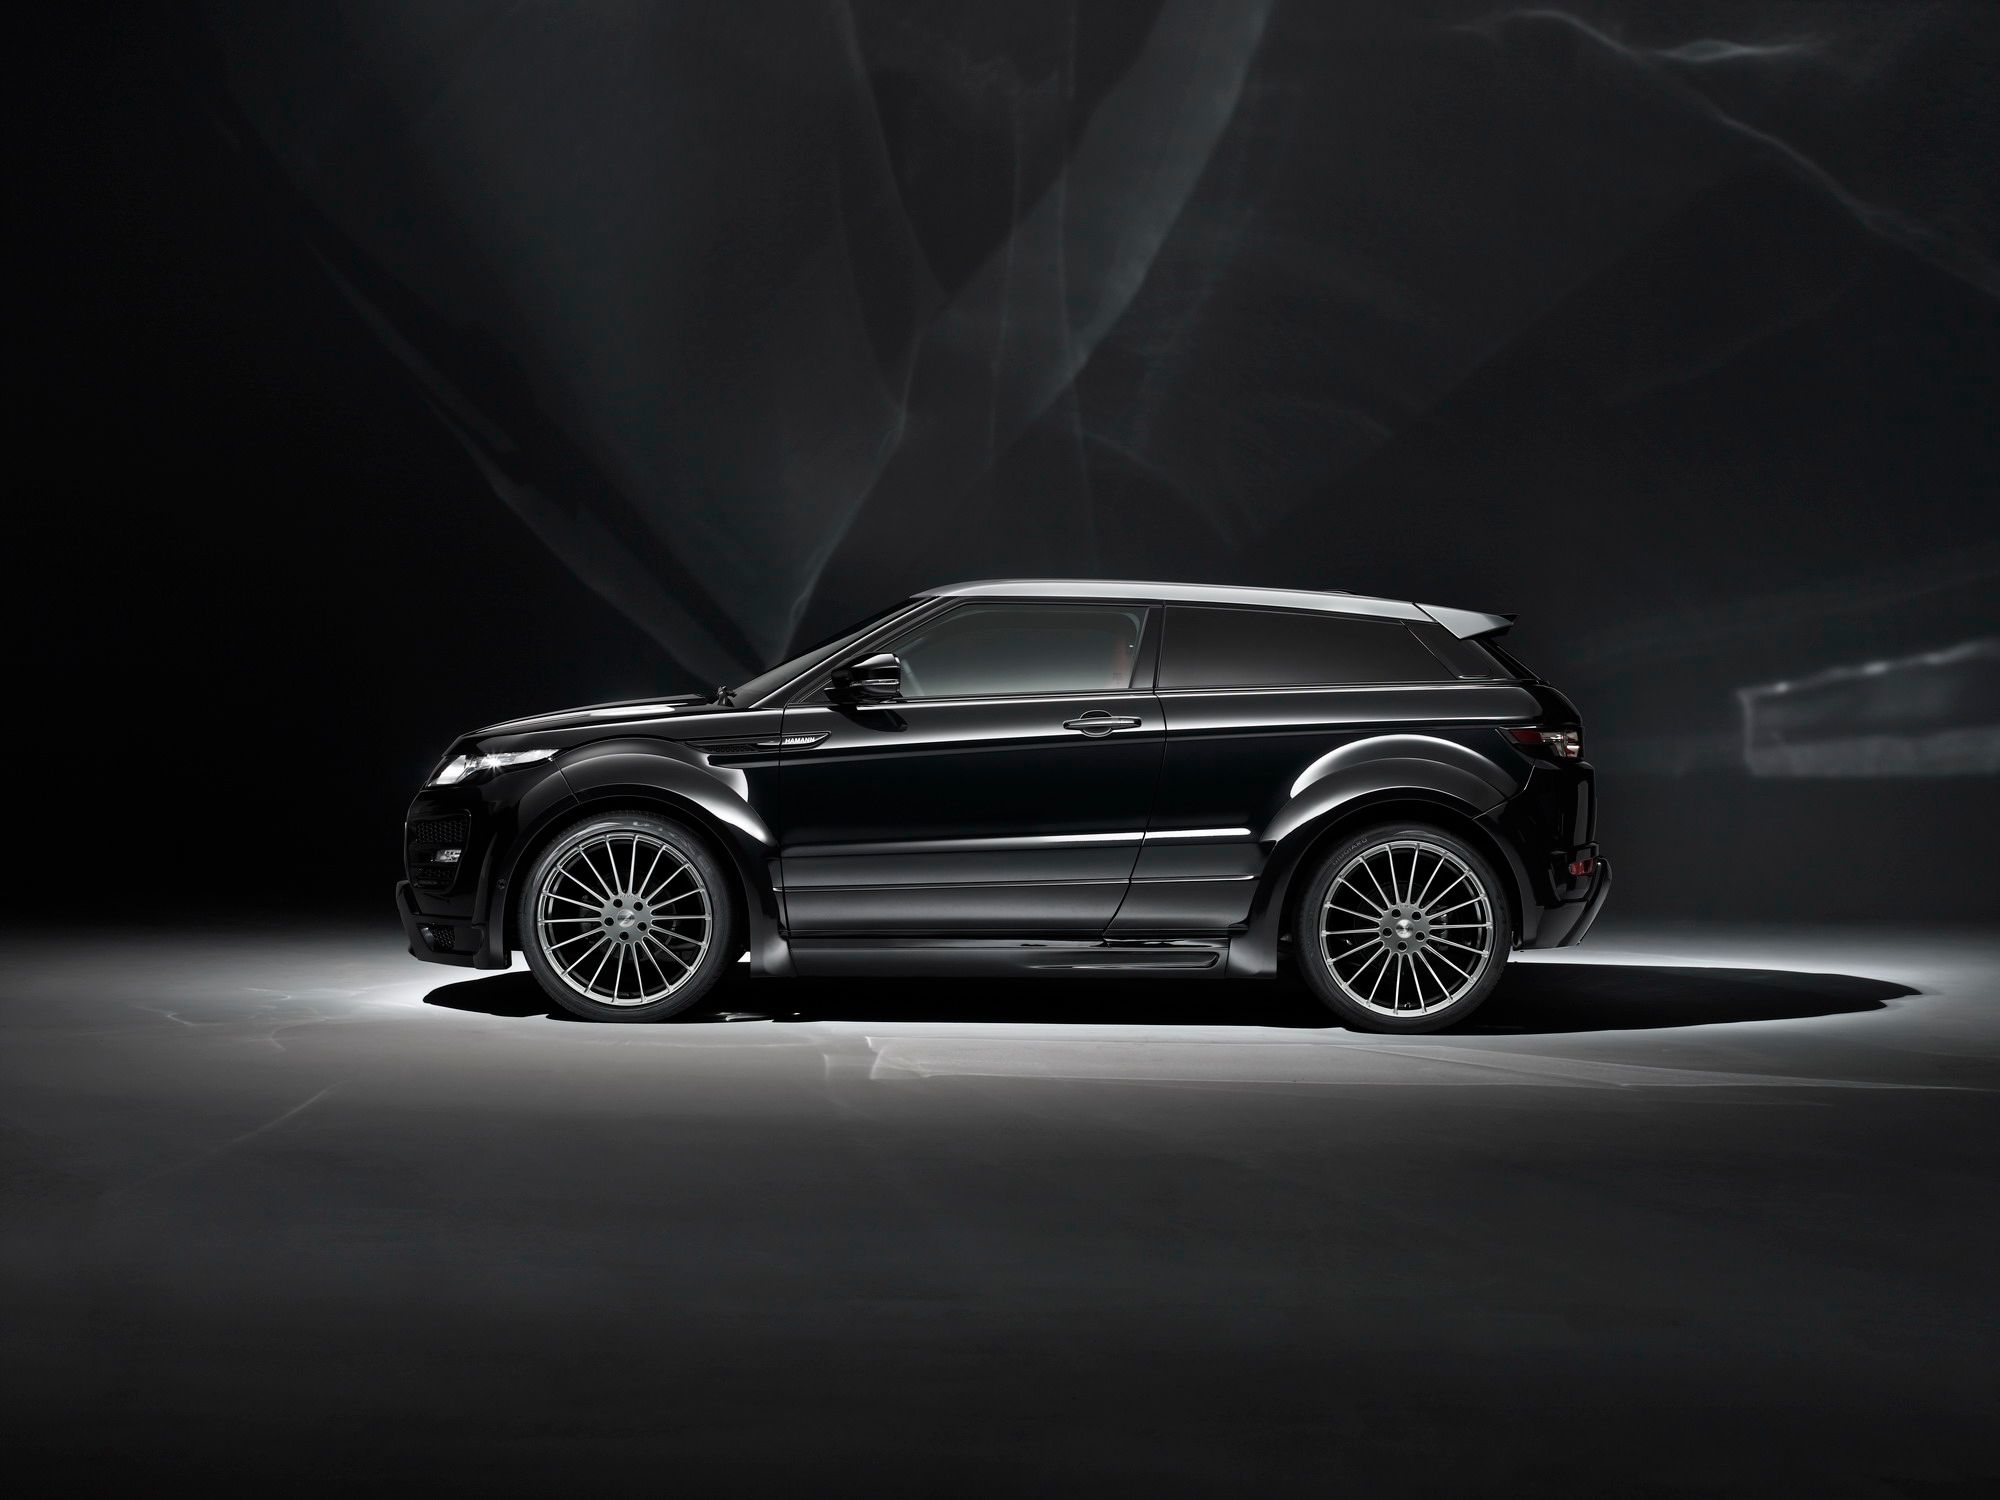 2012 Range Rover Evoque by Hamann